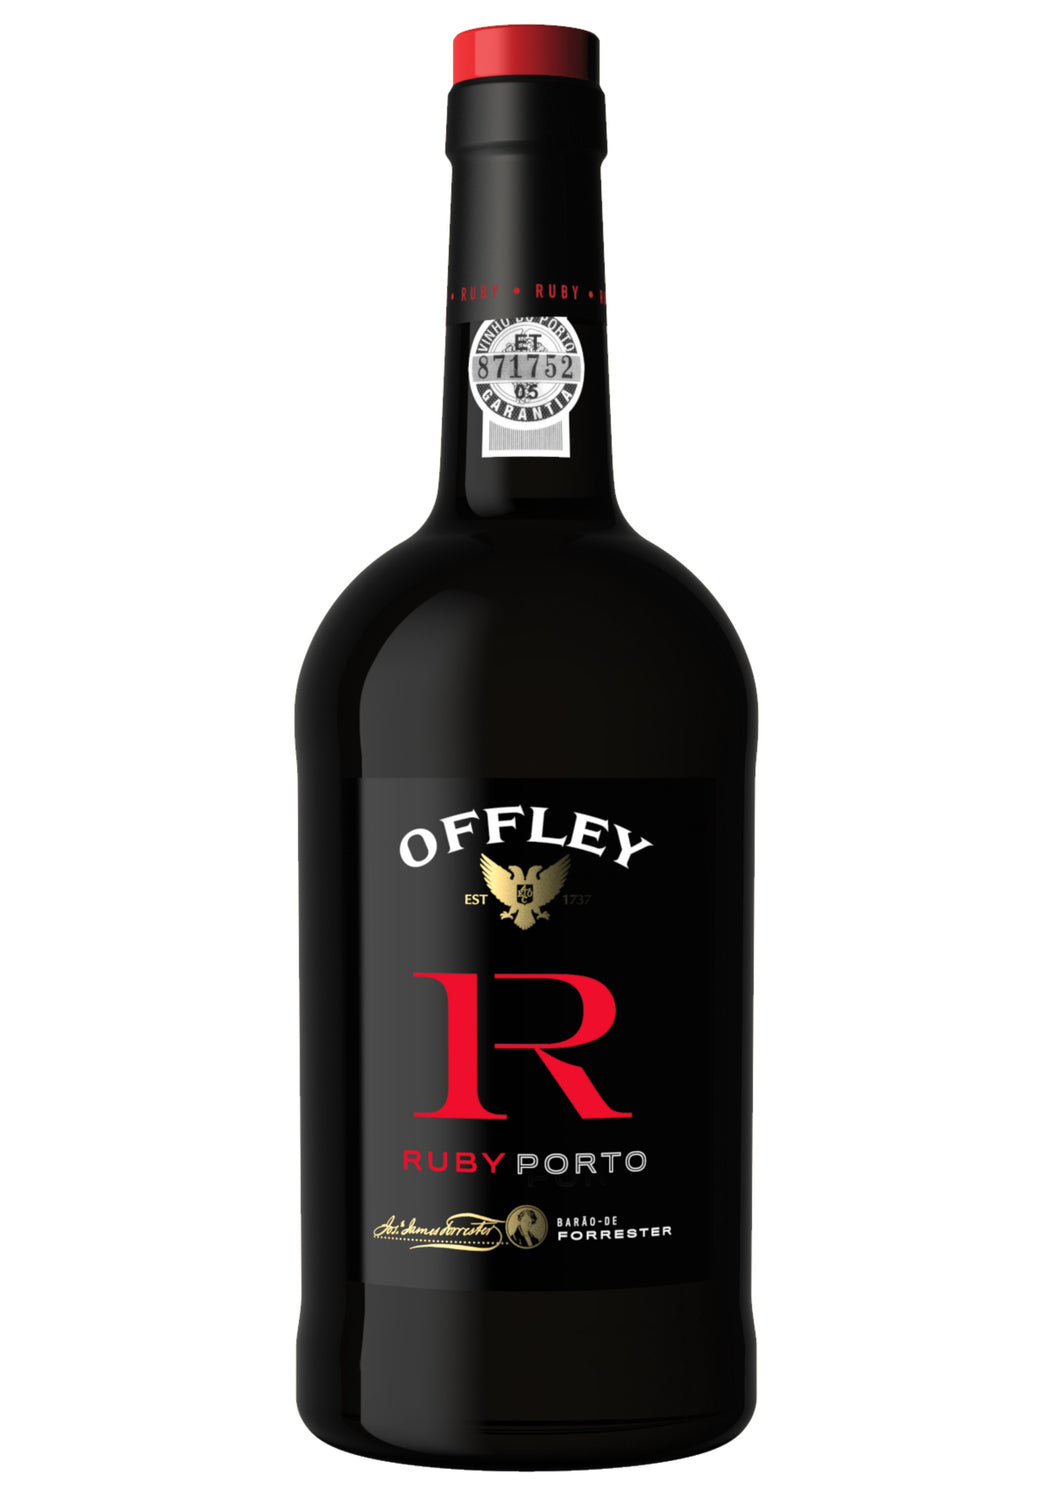 Offley Ruby Porto 750ml | Port Wine.